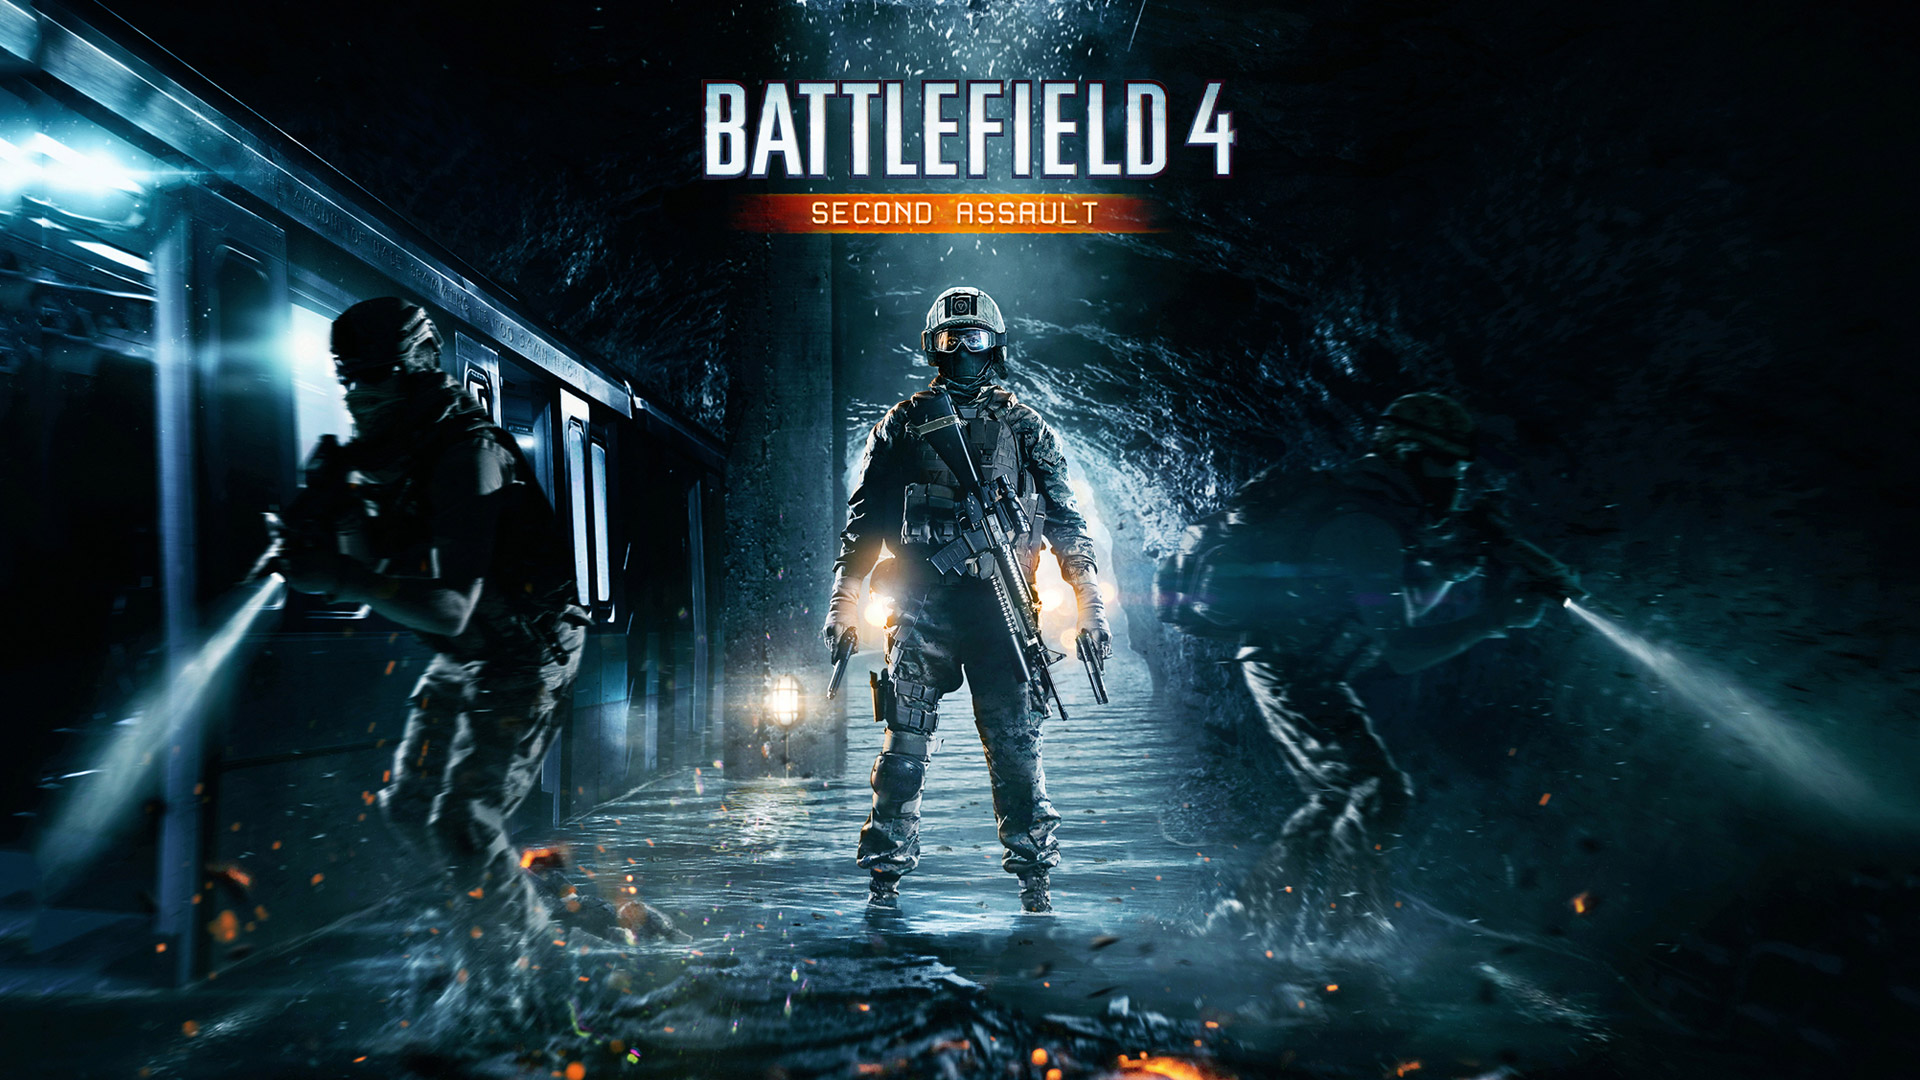 Battlefield 4 DLC Second Assault FREE on Origin August 10th - Hot Deals -  Linus Tech Tips